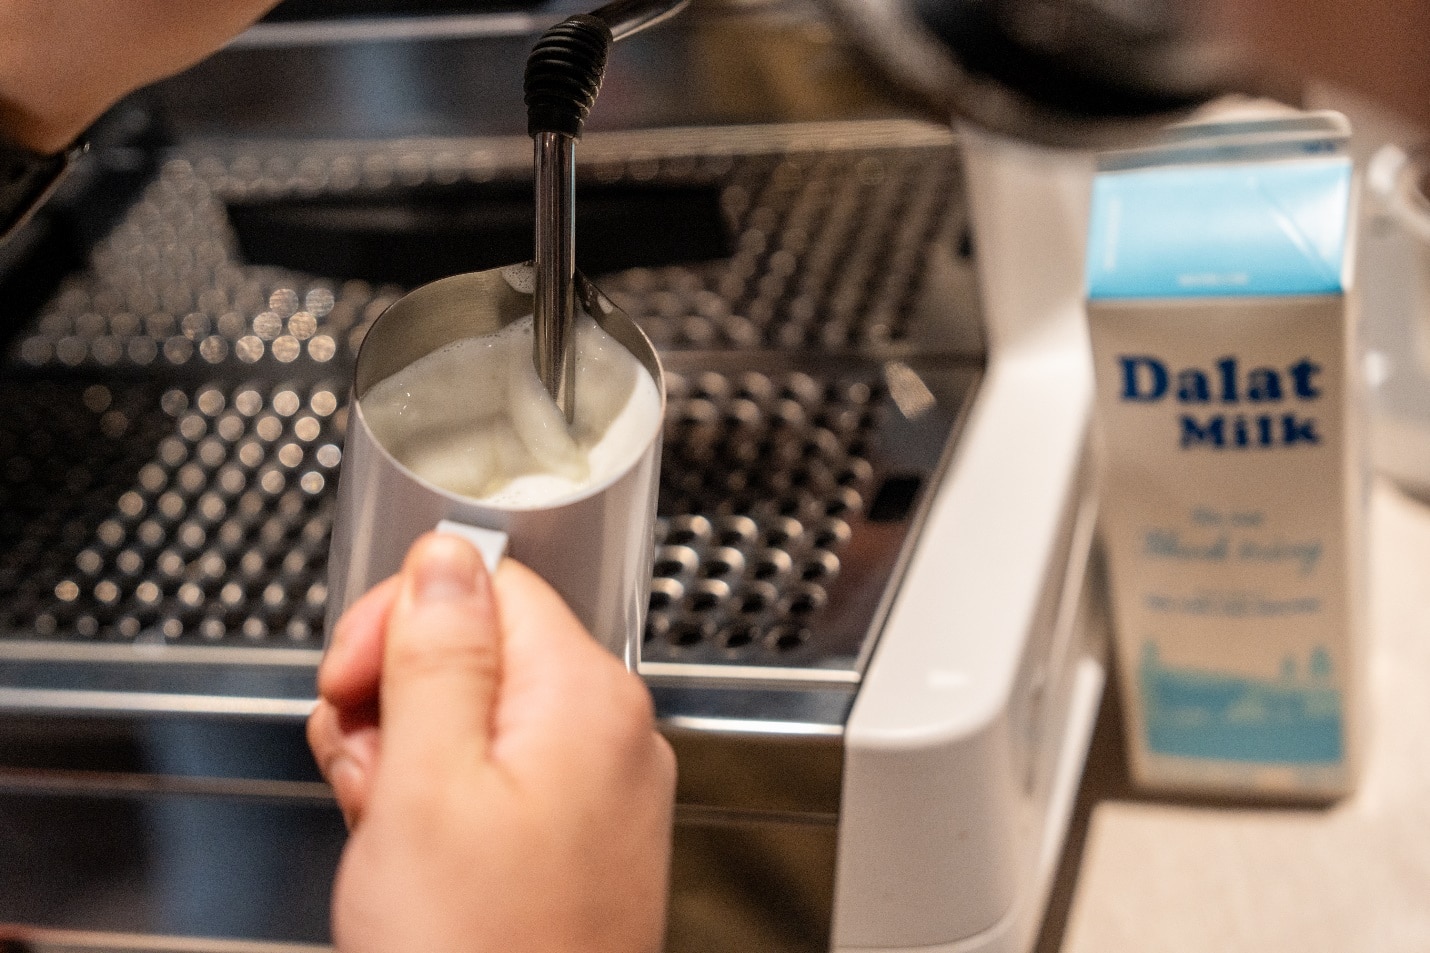 Dalatmilk: Sữa tươi pha chế hàng đầu dành cho barista- Ảnh 3.